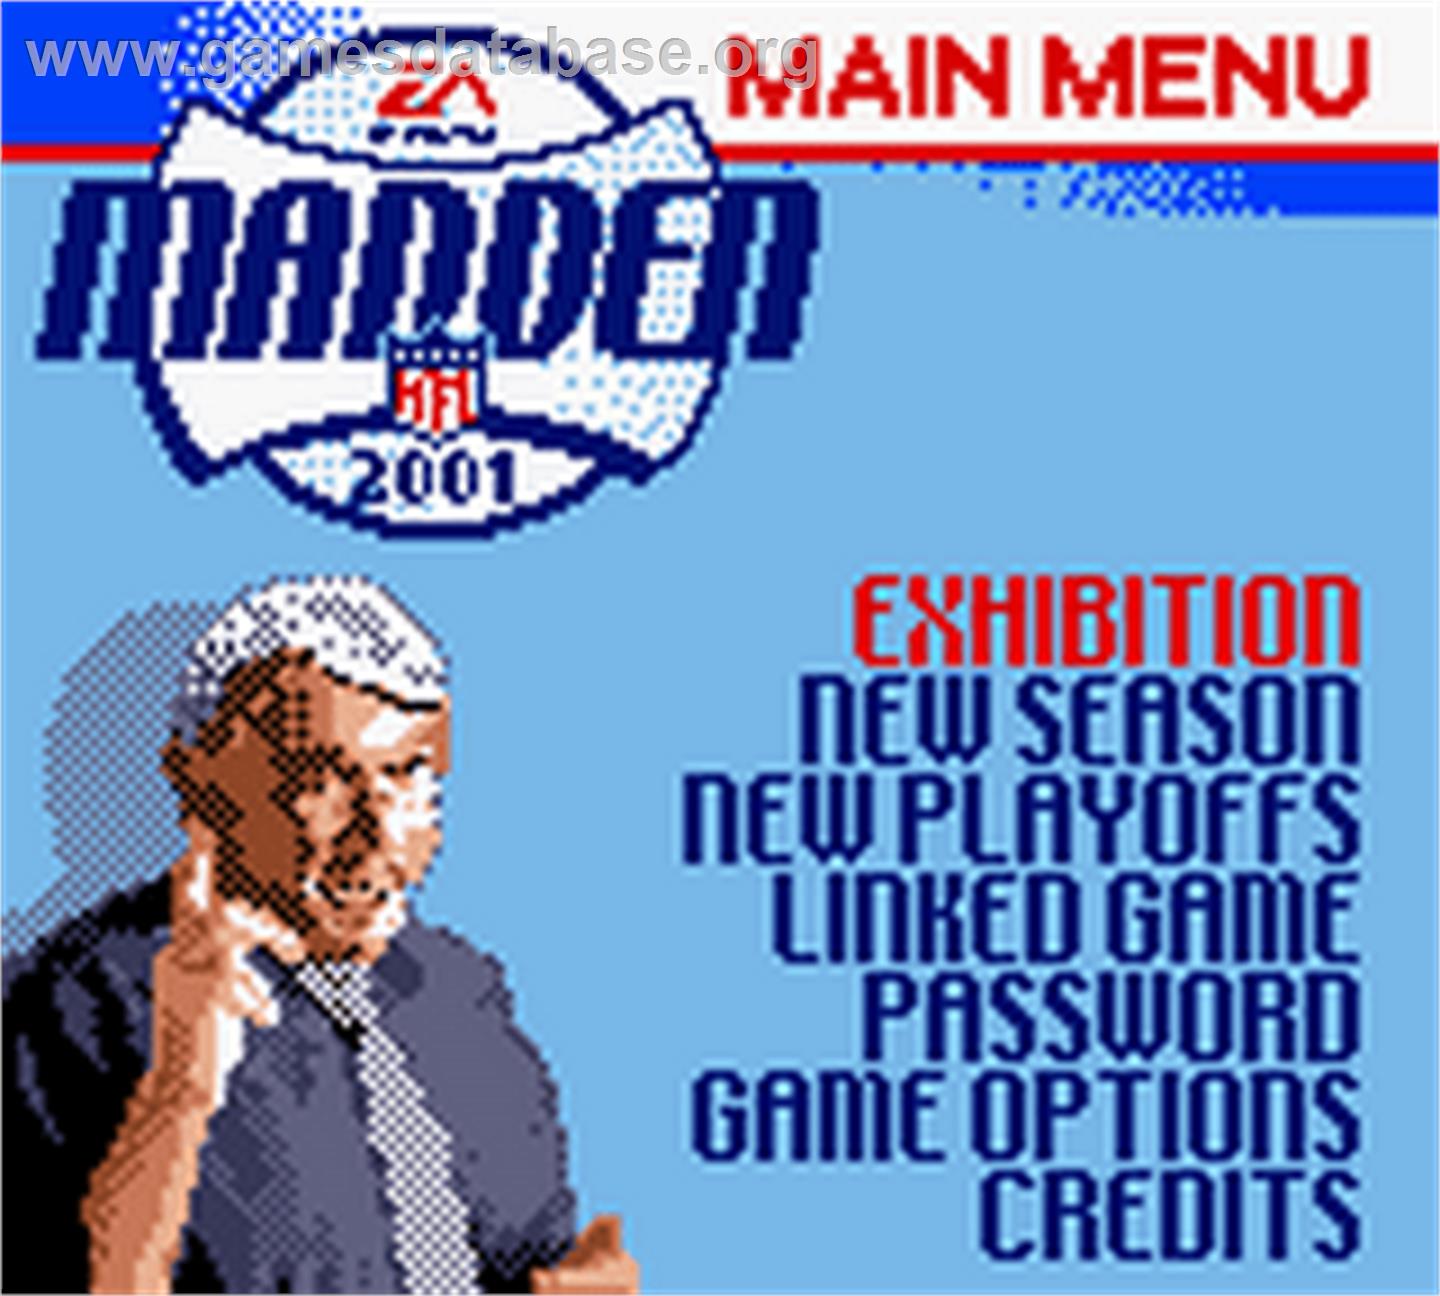 Madden NFL 2001 - Nintendo Game Boy Color - Artwork - Title Screen